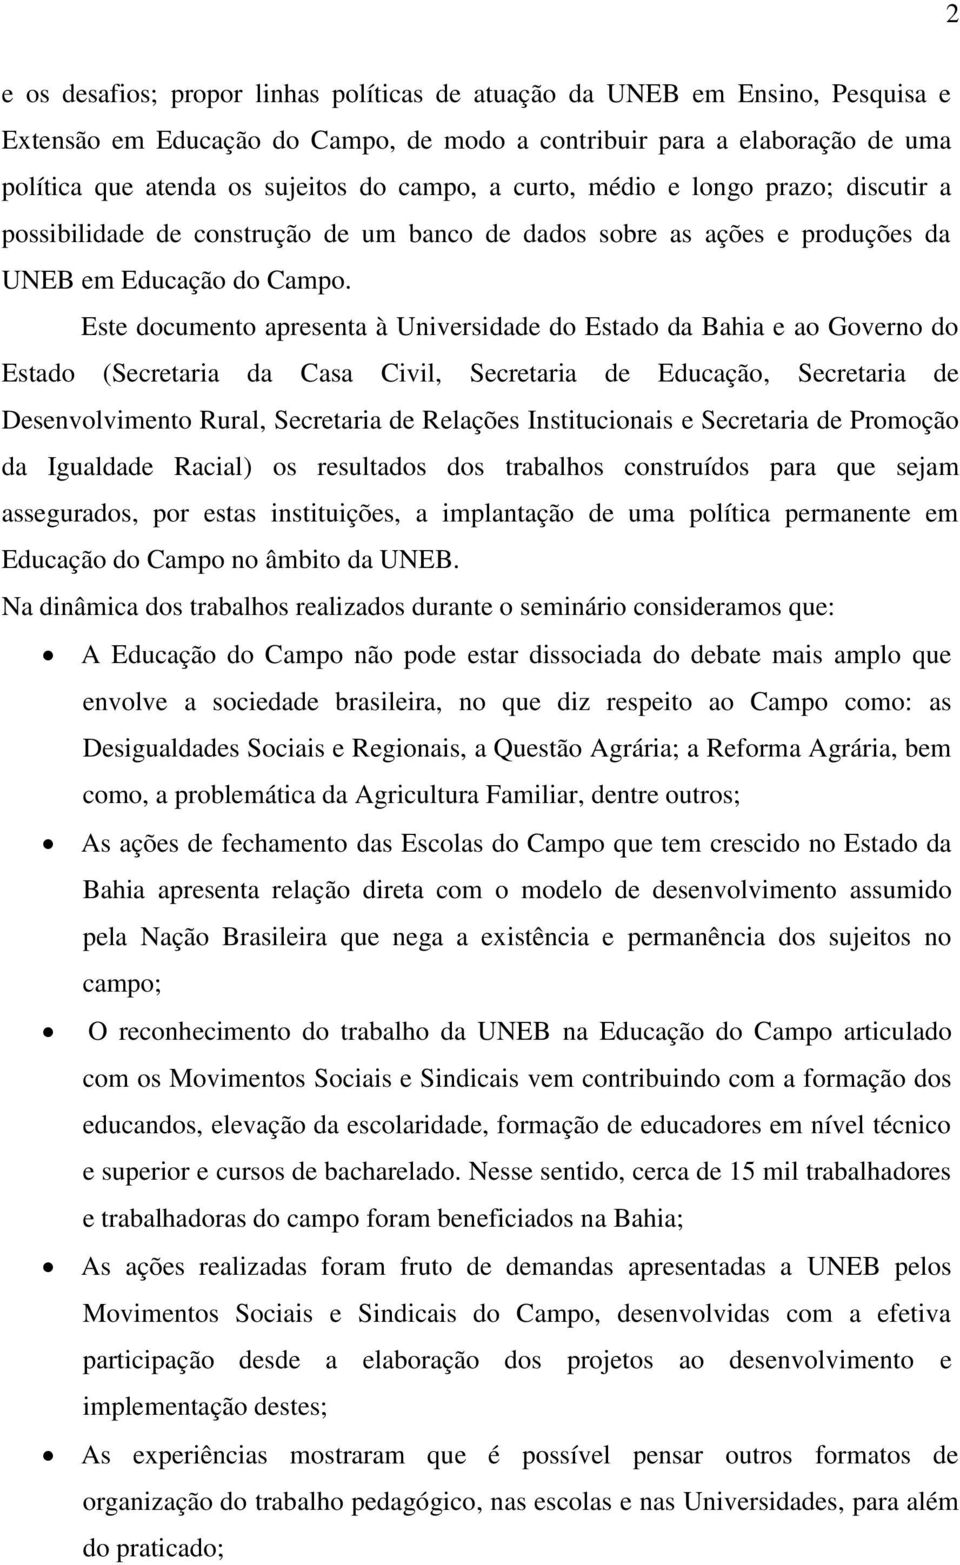 Este documento apresenta à Universidade do Estado da Bahia e ao Governo do Estado (Secretaria da Casa Civil, Secretaria de Educação, Secretaria de Desenvolvimento Rural, Secretaria de Relações